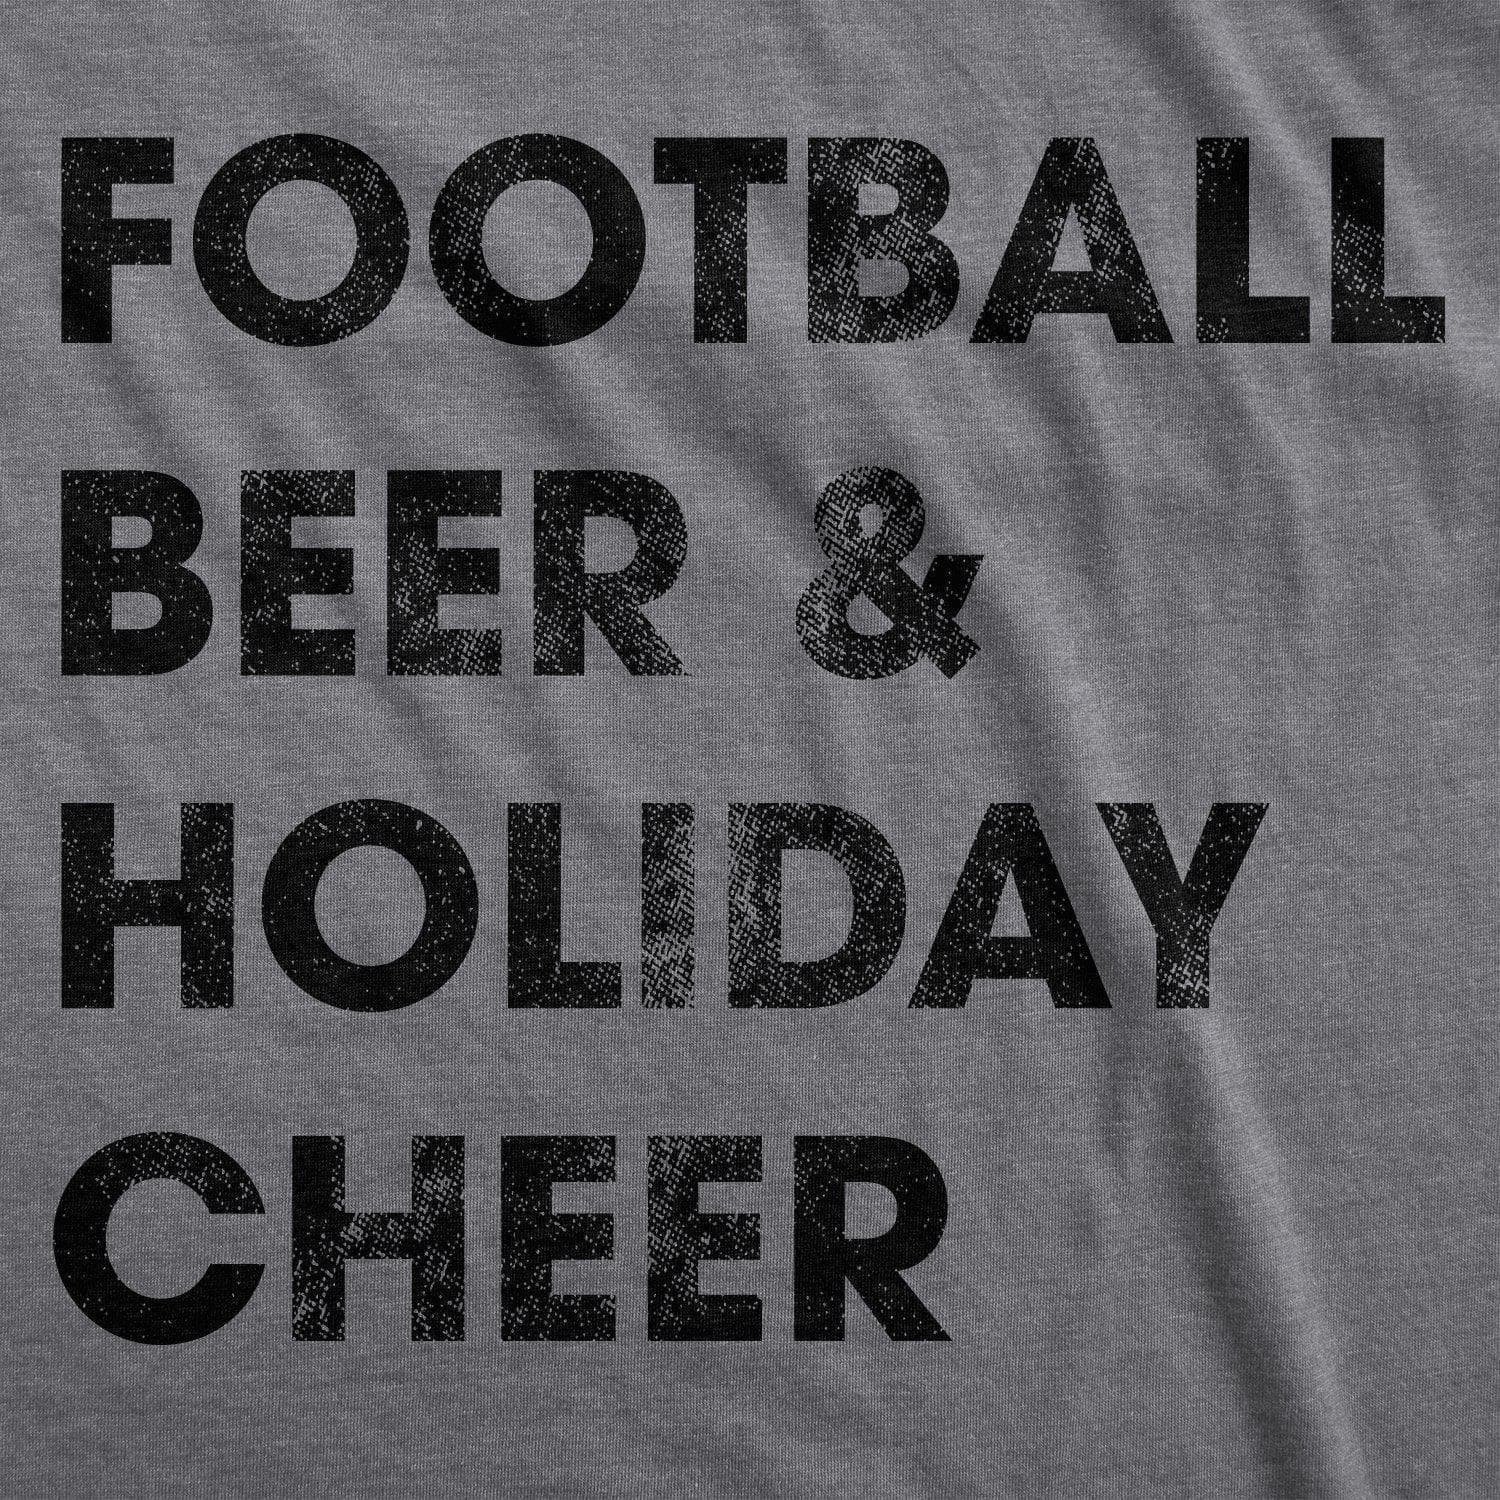 Football Beer And Holiday Cheer Men's Tshirt - Crazy Dog T-Shirts